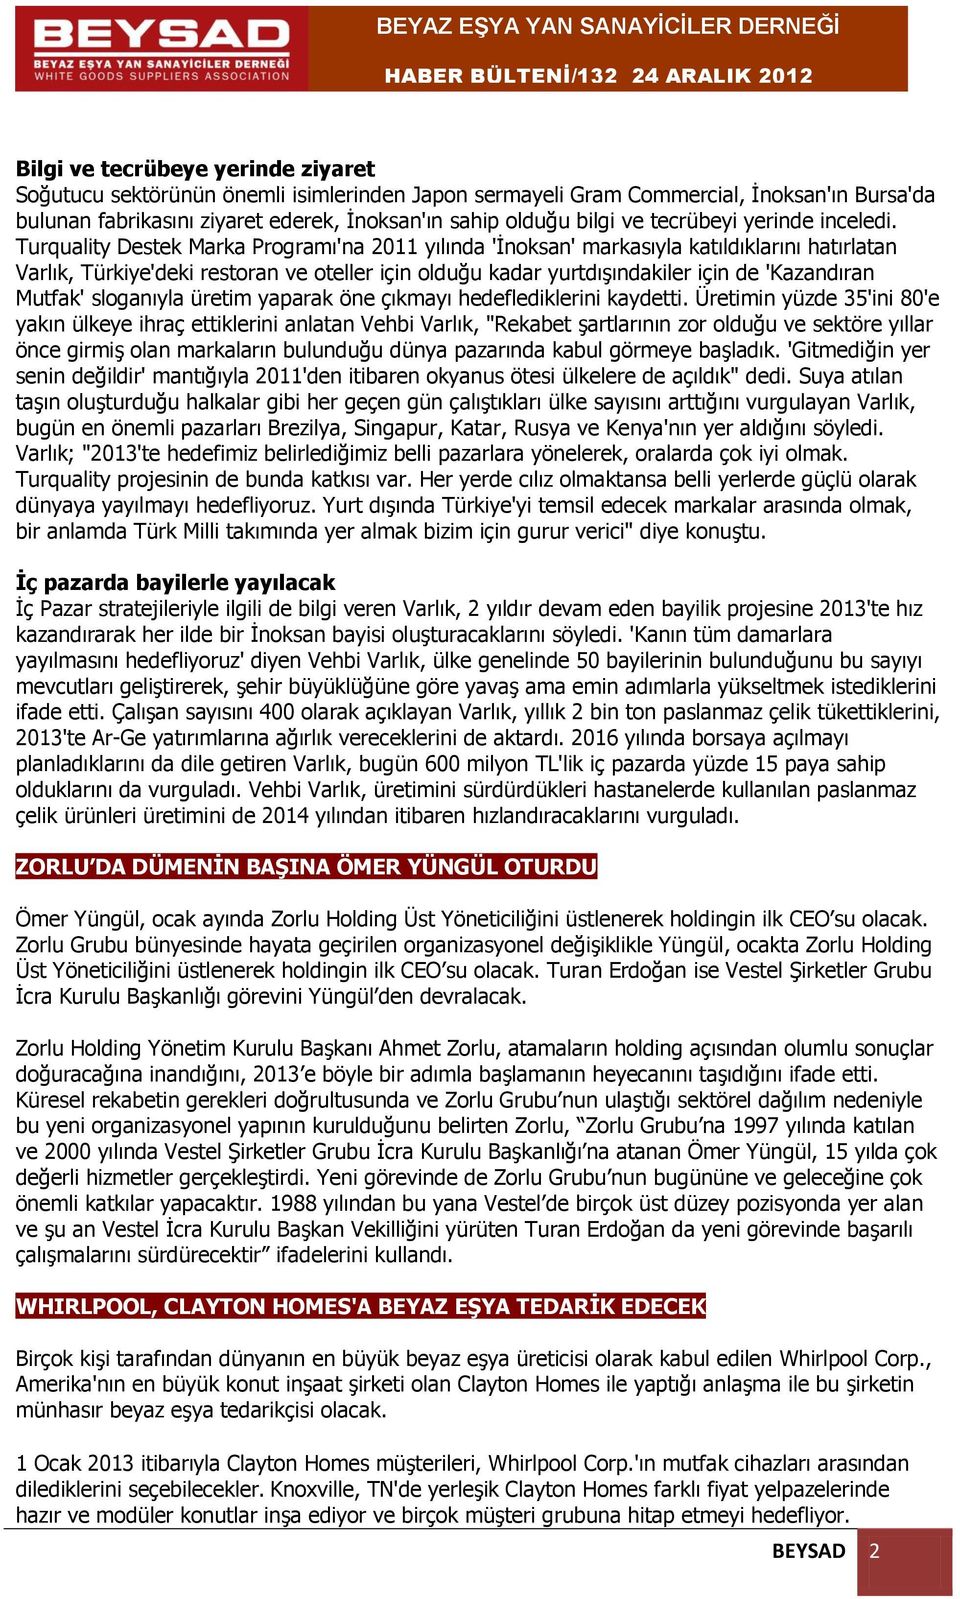 Turquality Destek Marka Programı'na 2011 yılında 'İnoksan' markasıyla katıldıklarını hatırlatan Varlık, Türkiye'deki restoran ve oteller için olduğu kadar yurtdışındakiler için de 'Kazandıran Mutfak'